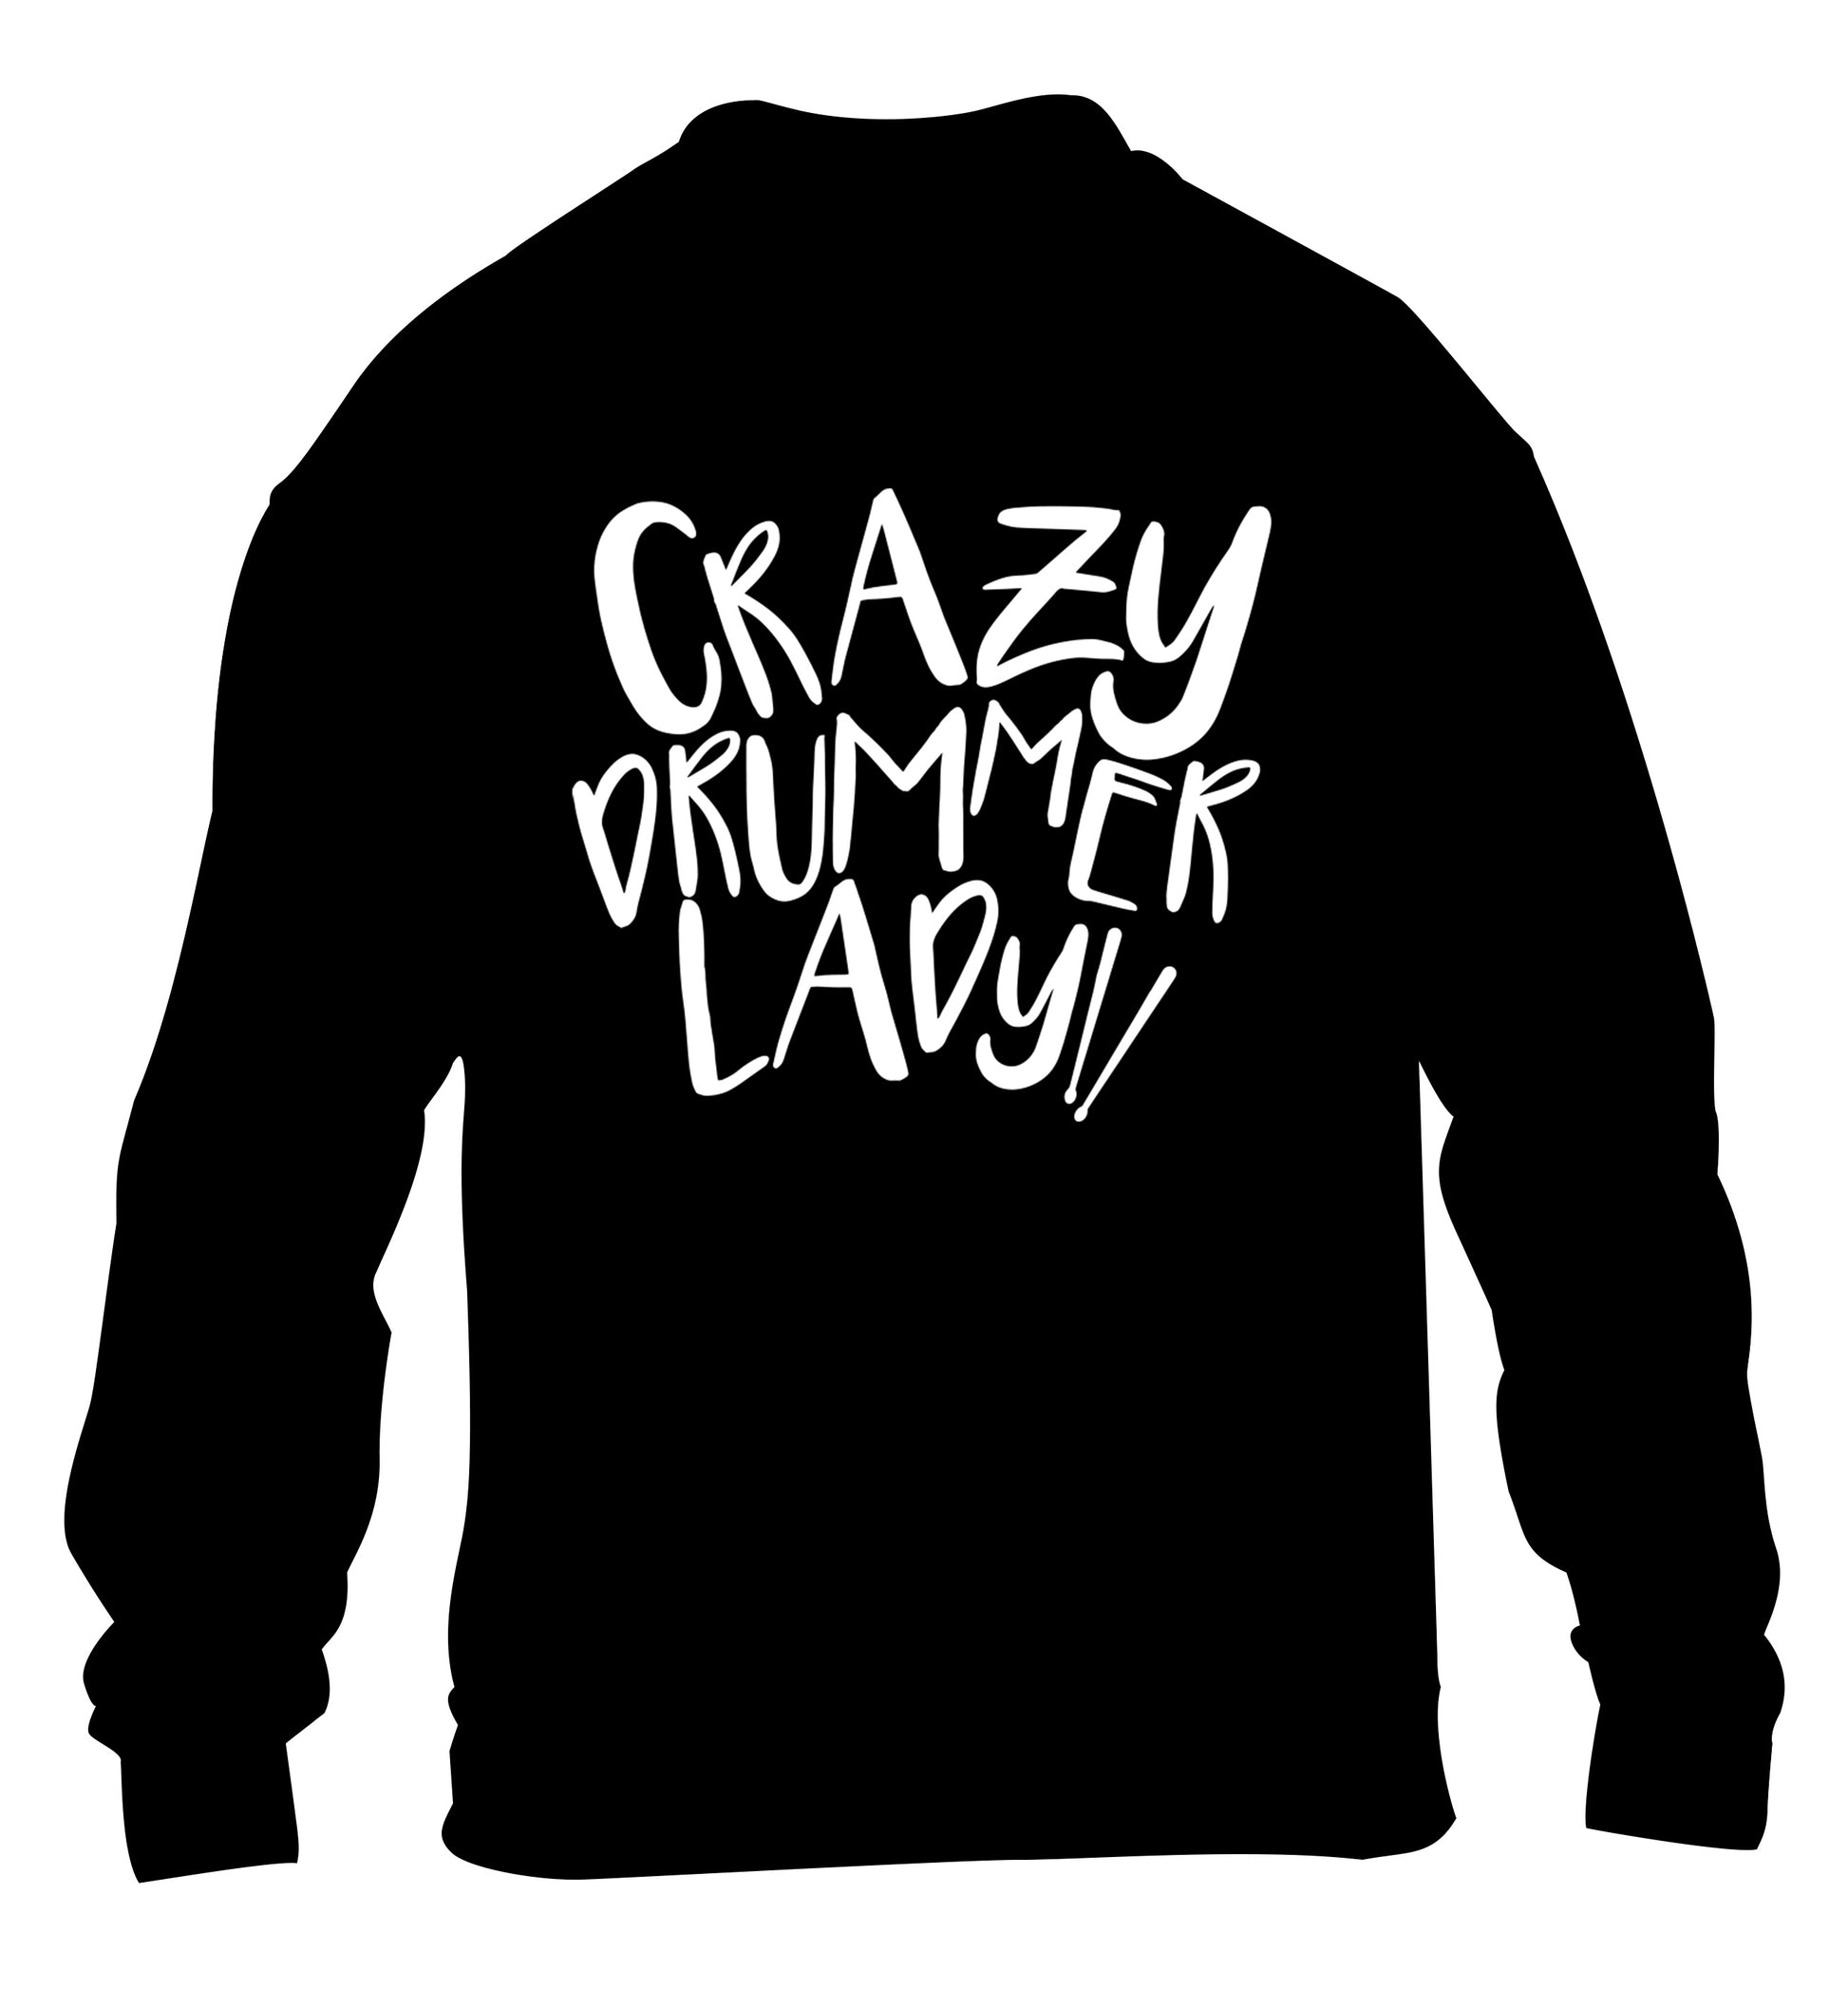 Crazy drummer lady children's black sweater 12-14 Years